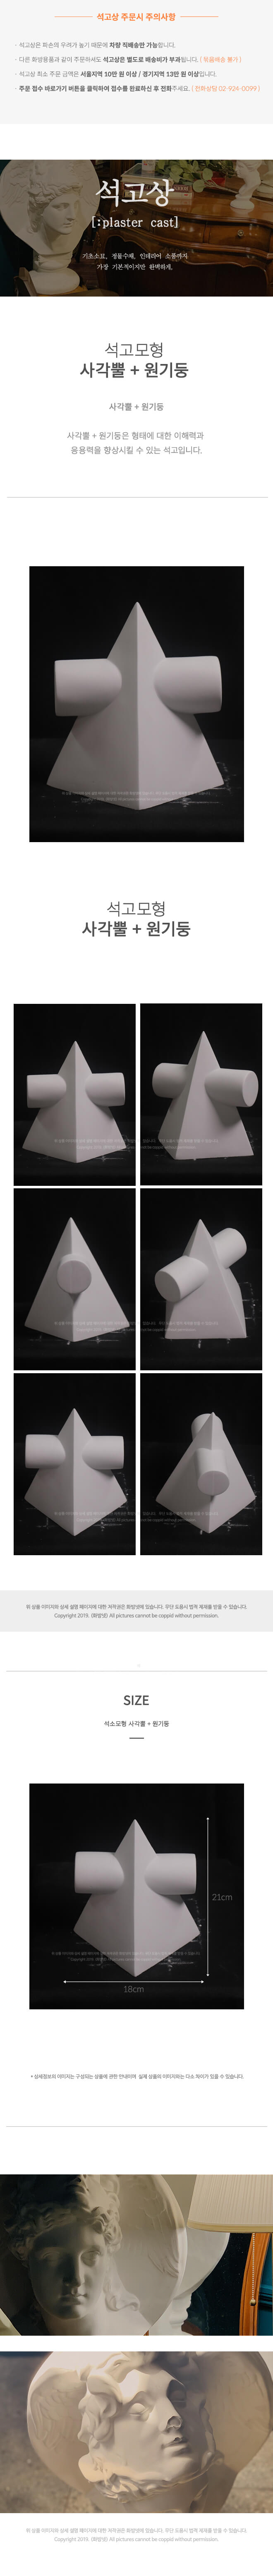 사각뿔 + 원기둥 18 x 21 cm  석고모형 , 석고상, 조각상, 인테리어 소품